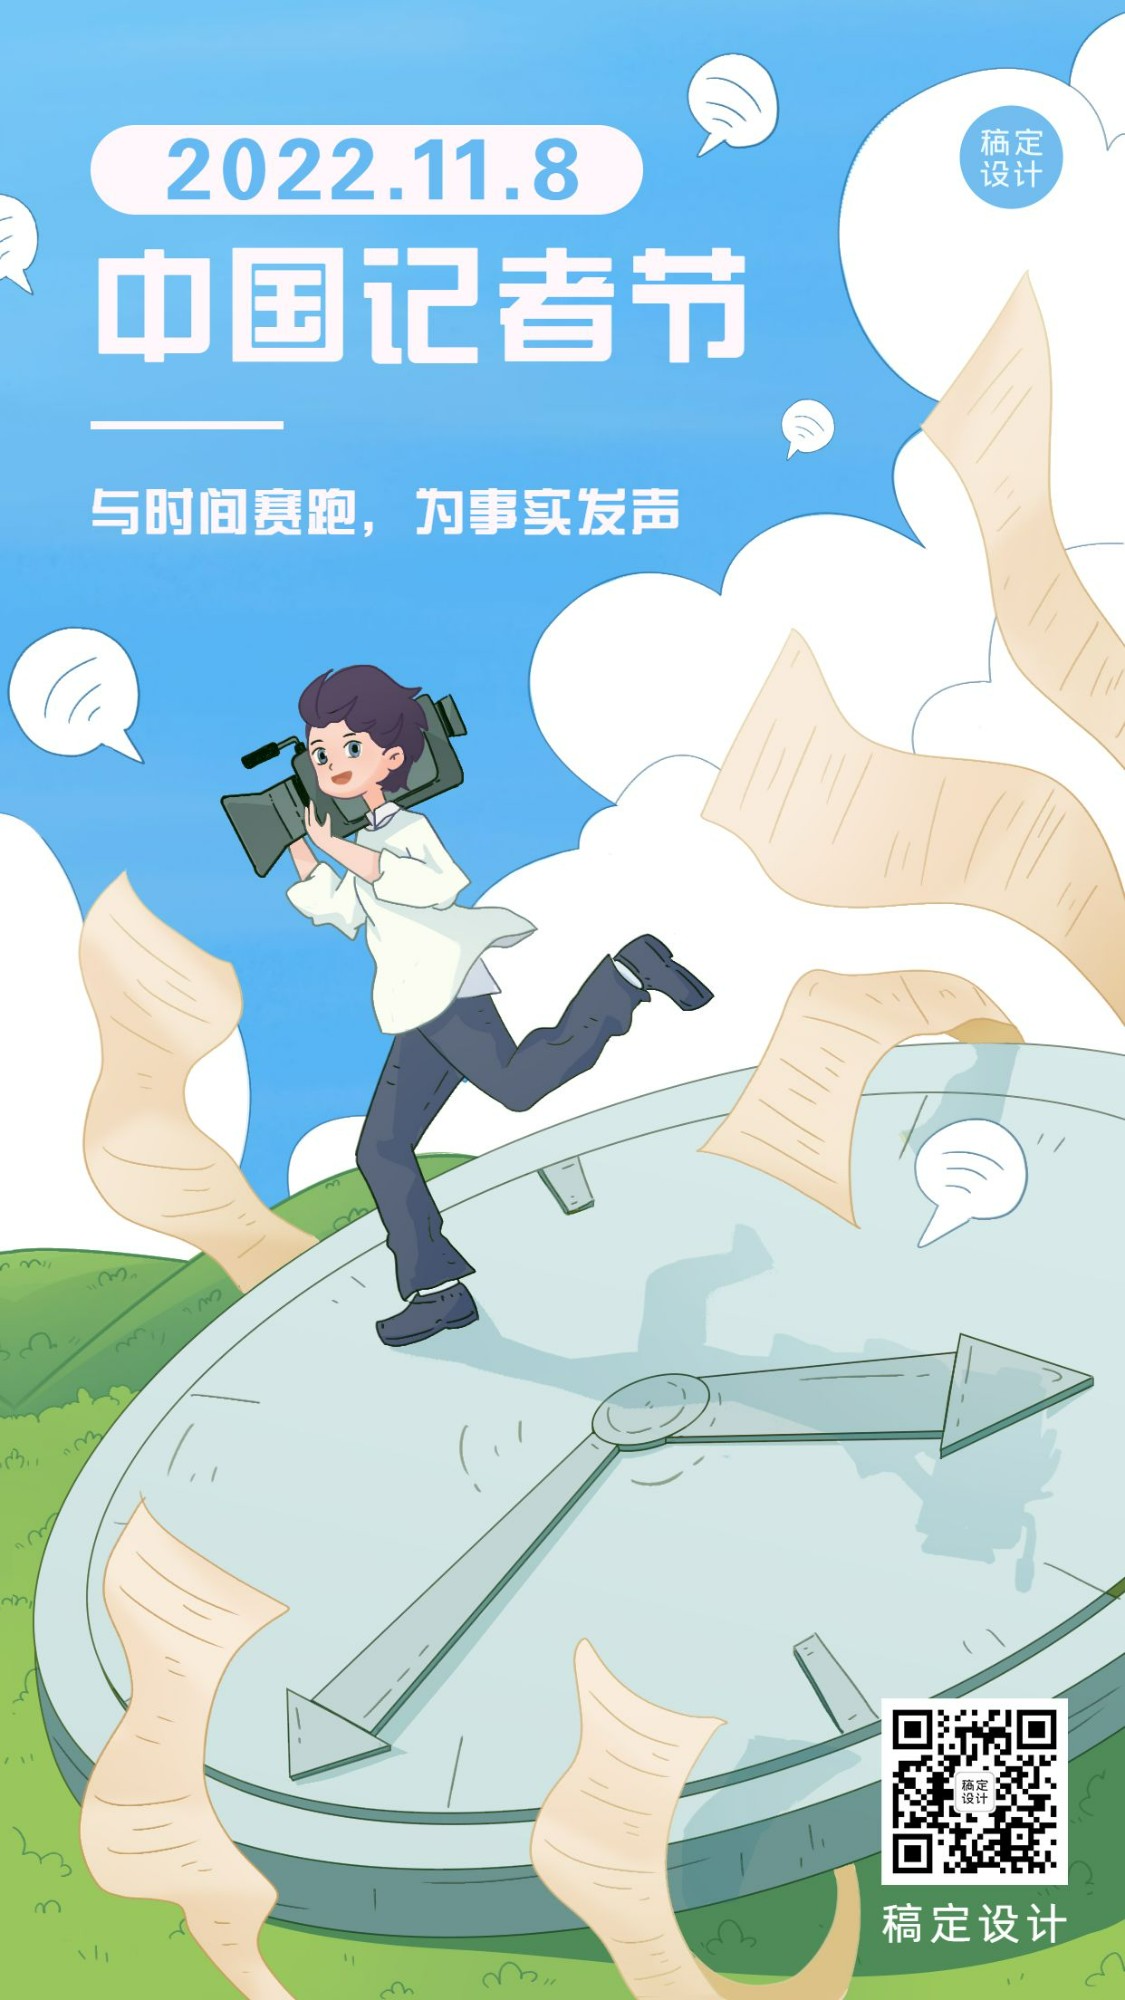 中国记者节新闻实时报道宣传手绘插画手机海报预览效果